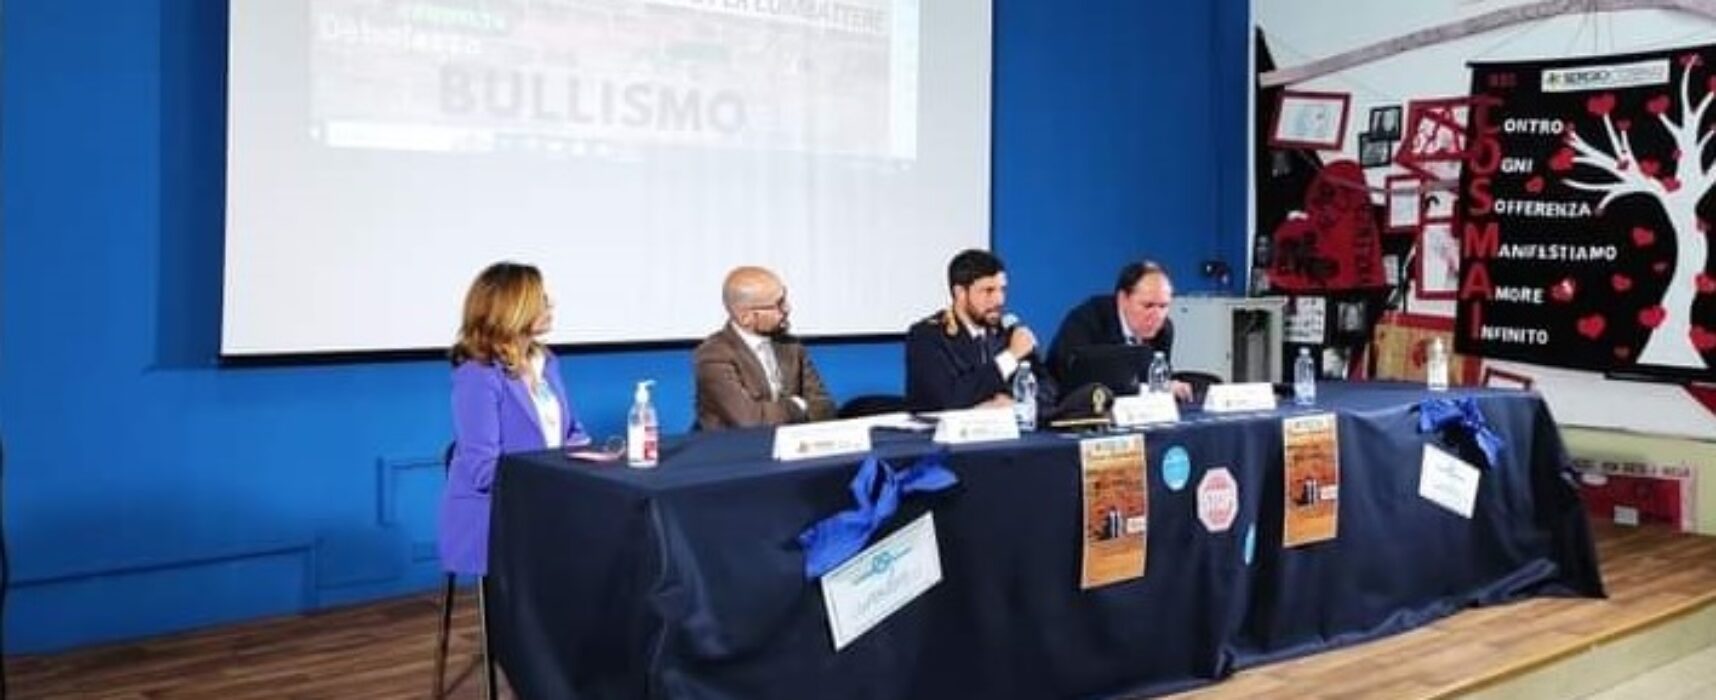 Bullismo e cyberbullismo, incontro tematico all’Istituto “Sergio Cosmai” / FOTO